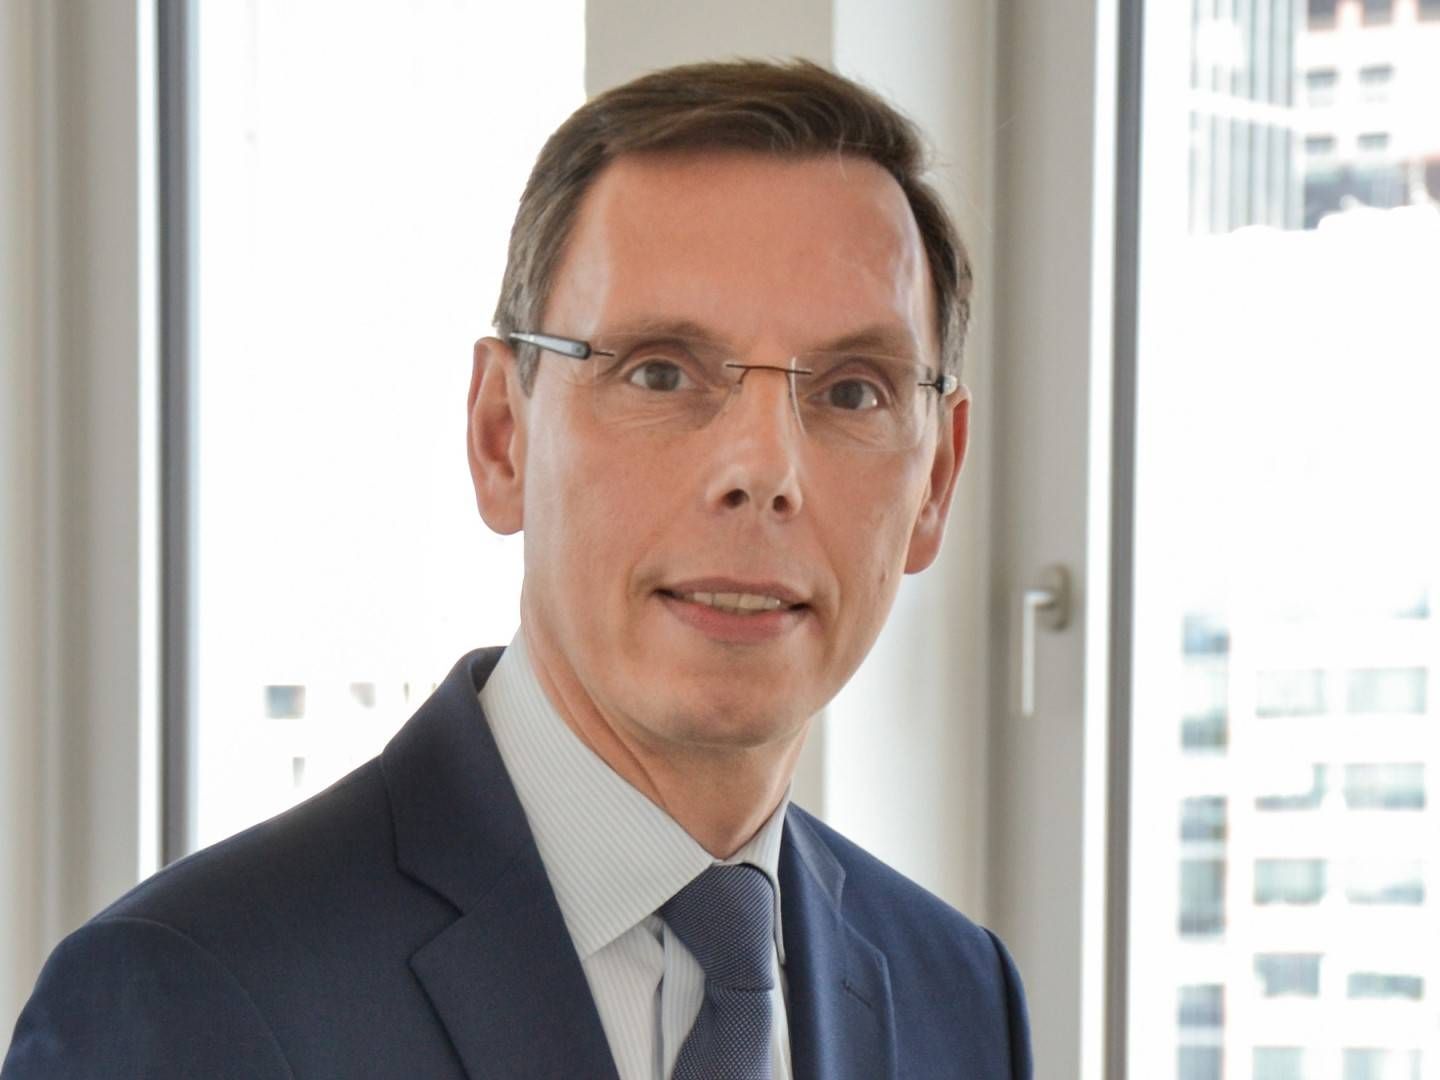 Jochen Wiesbach wird neues Mitglied der Geschäftsführung der Union Investment Privatfonds GmbH | Foto: Union Investment Privatfonds GmbH